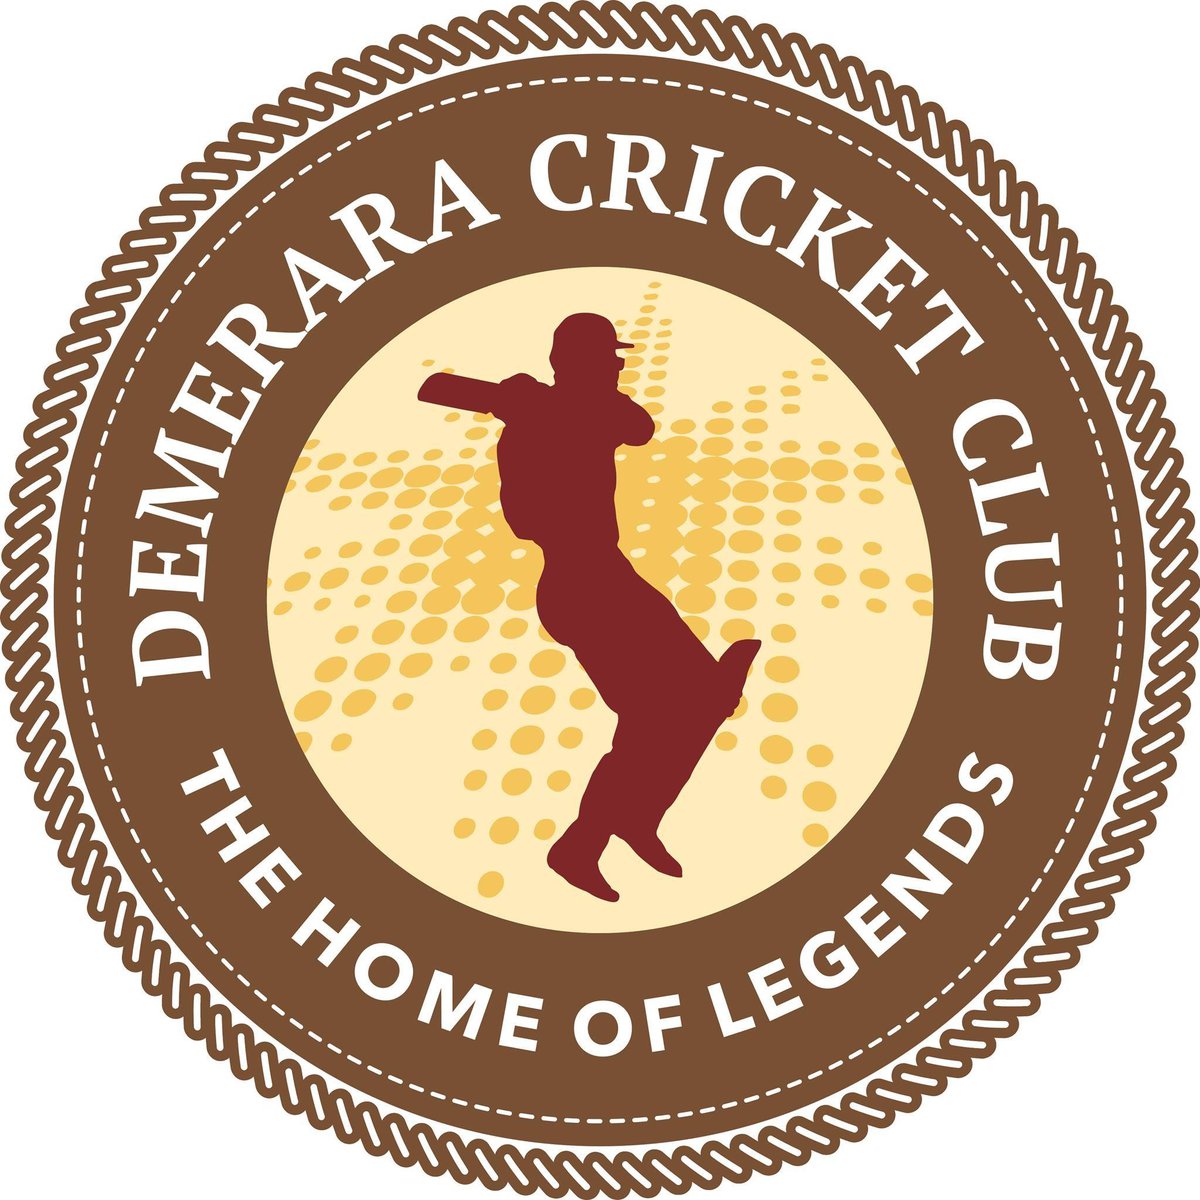 demerara-cricket-club